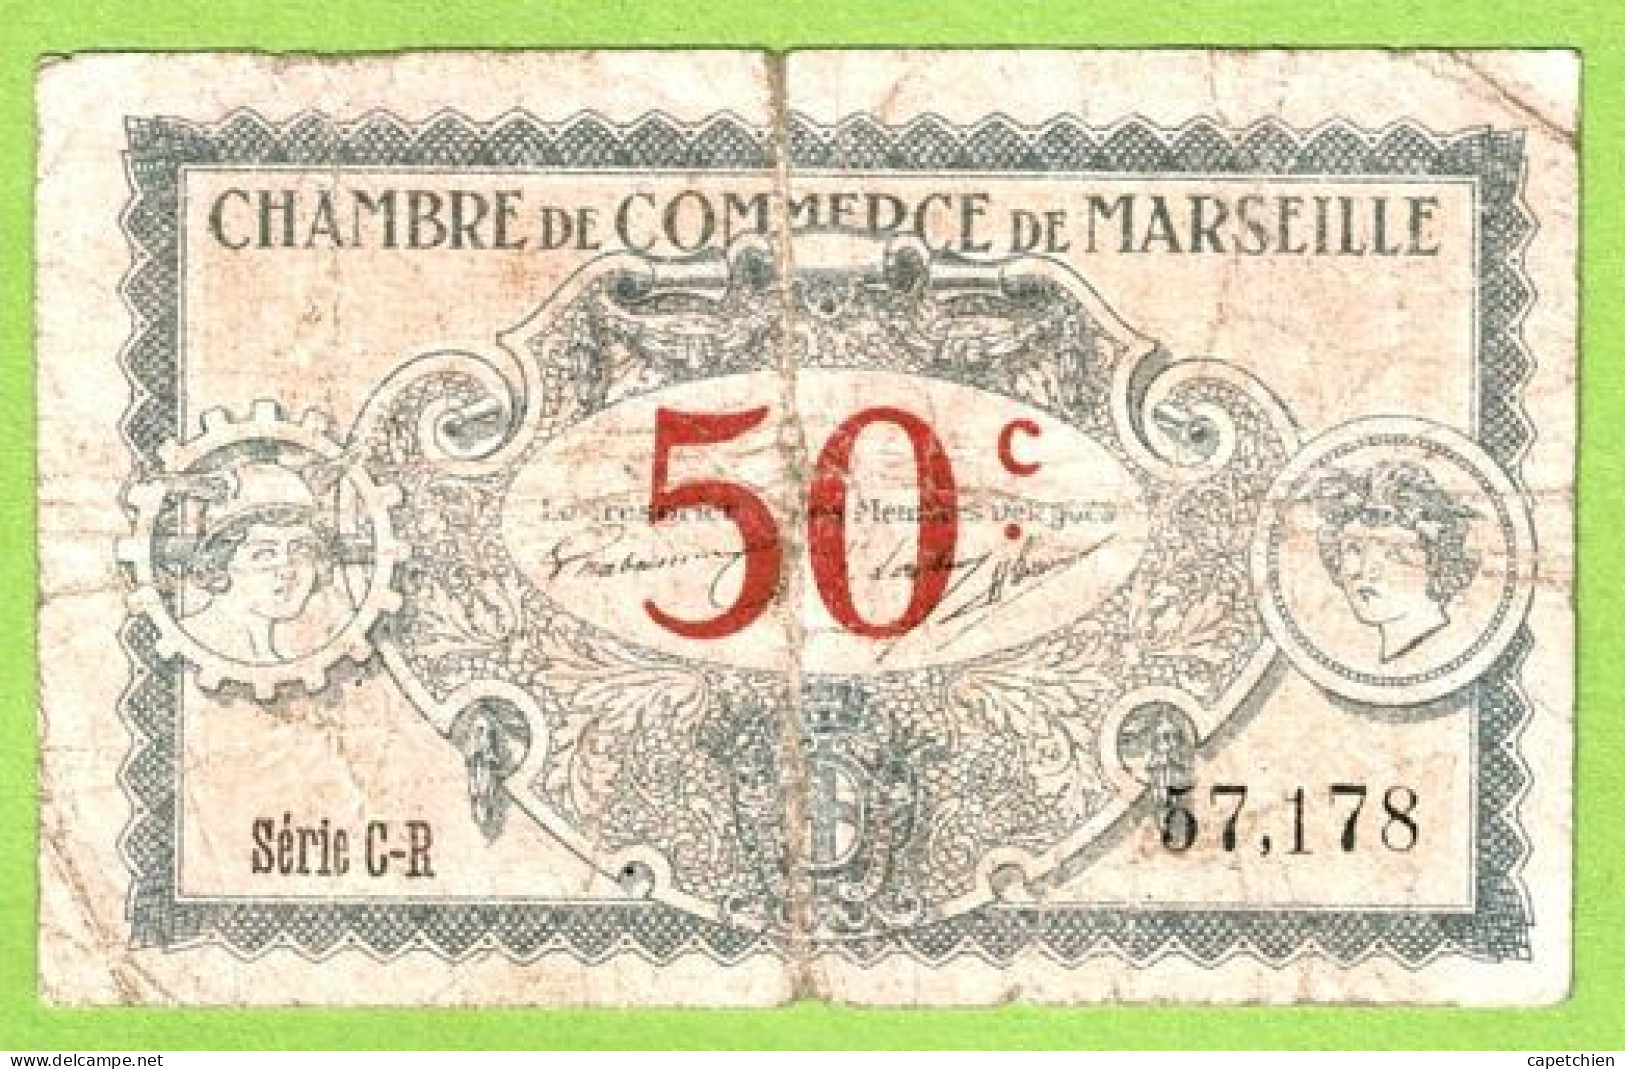 FRANCE / CHAMBRE De COMMERCE / MARSEILLE / 50 CENTIMES / 1917 / N° 57178 / SERIE C - R - Chambre De Commerce